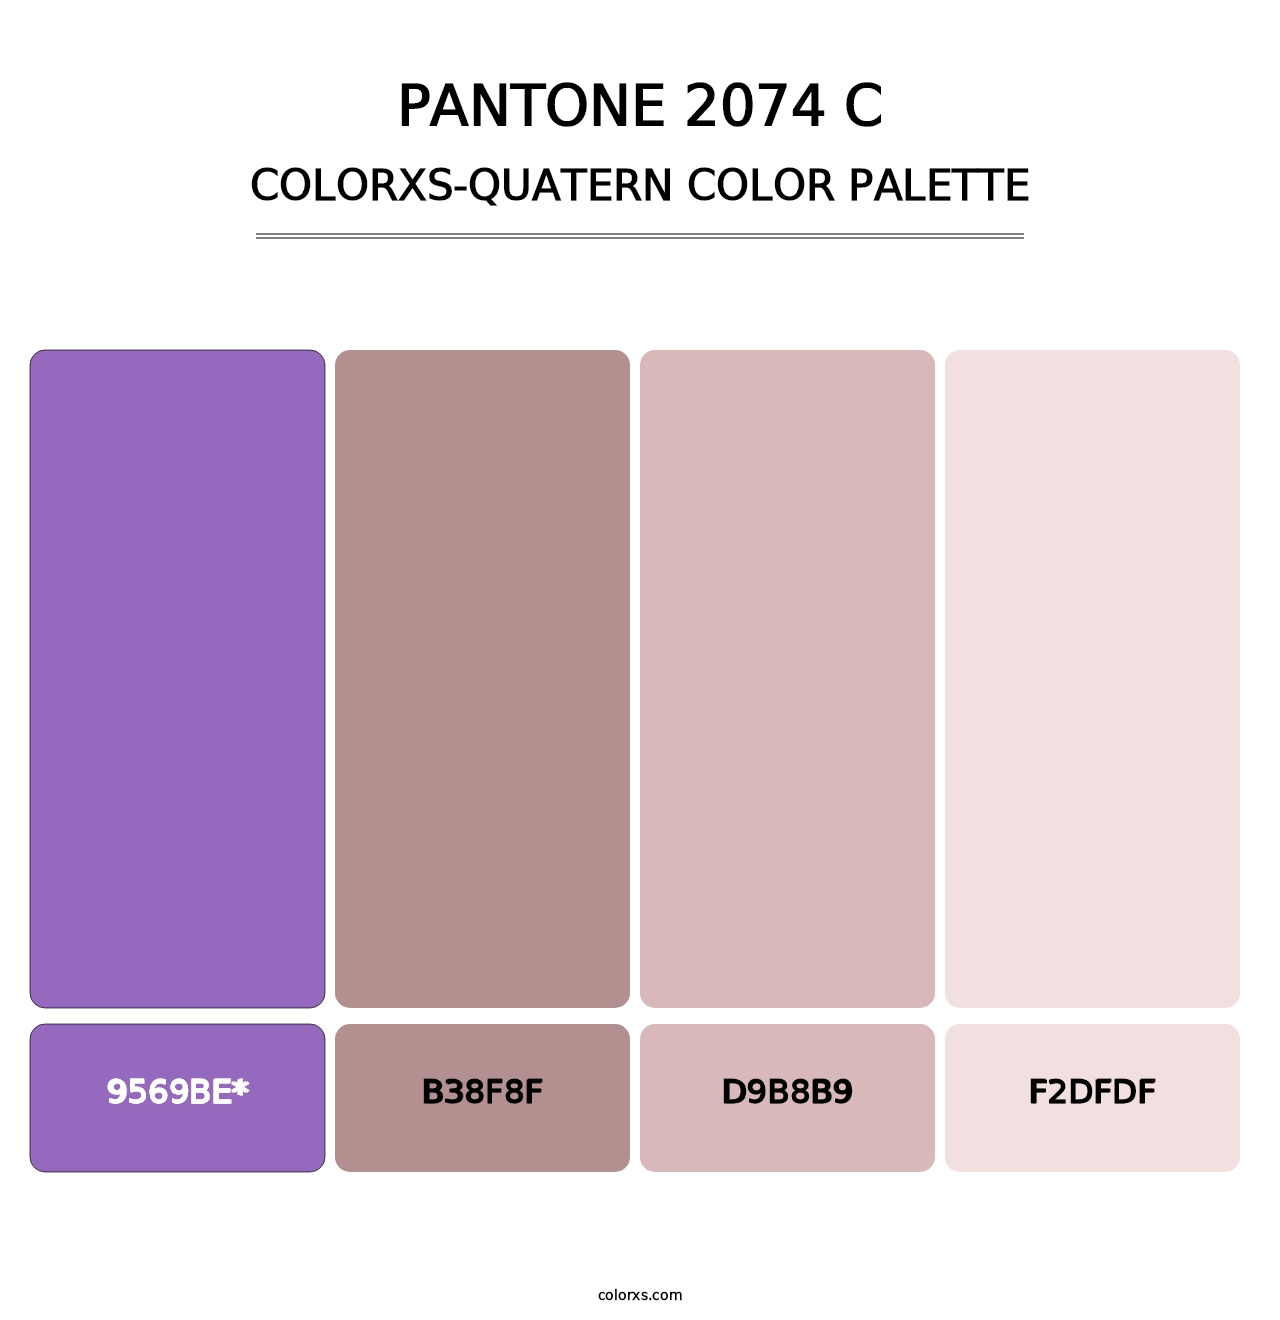 PANTONE 2074 C - Colorxs Quad Palette